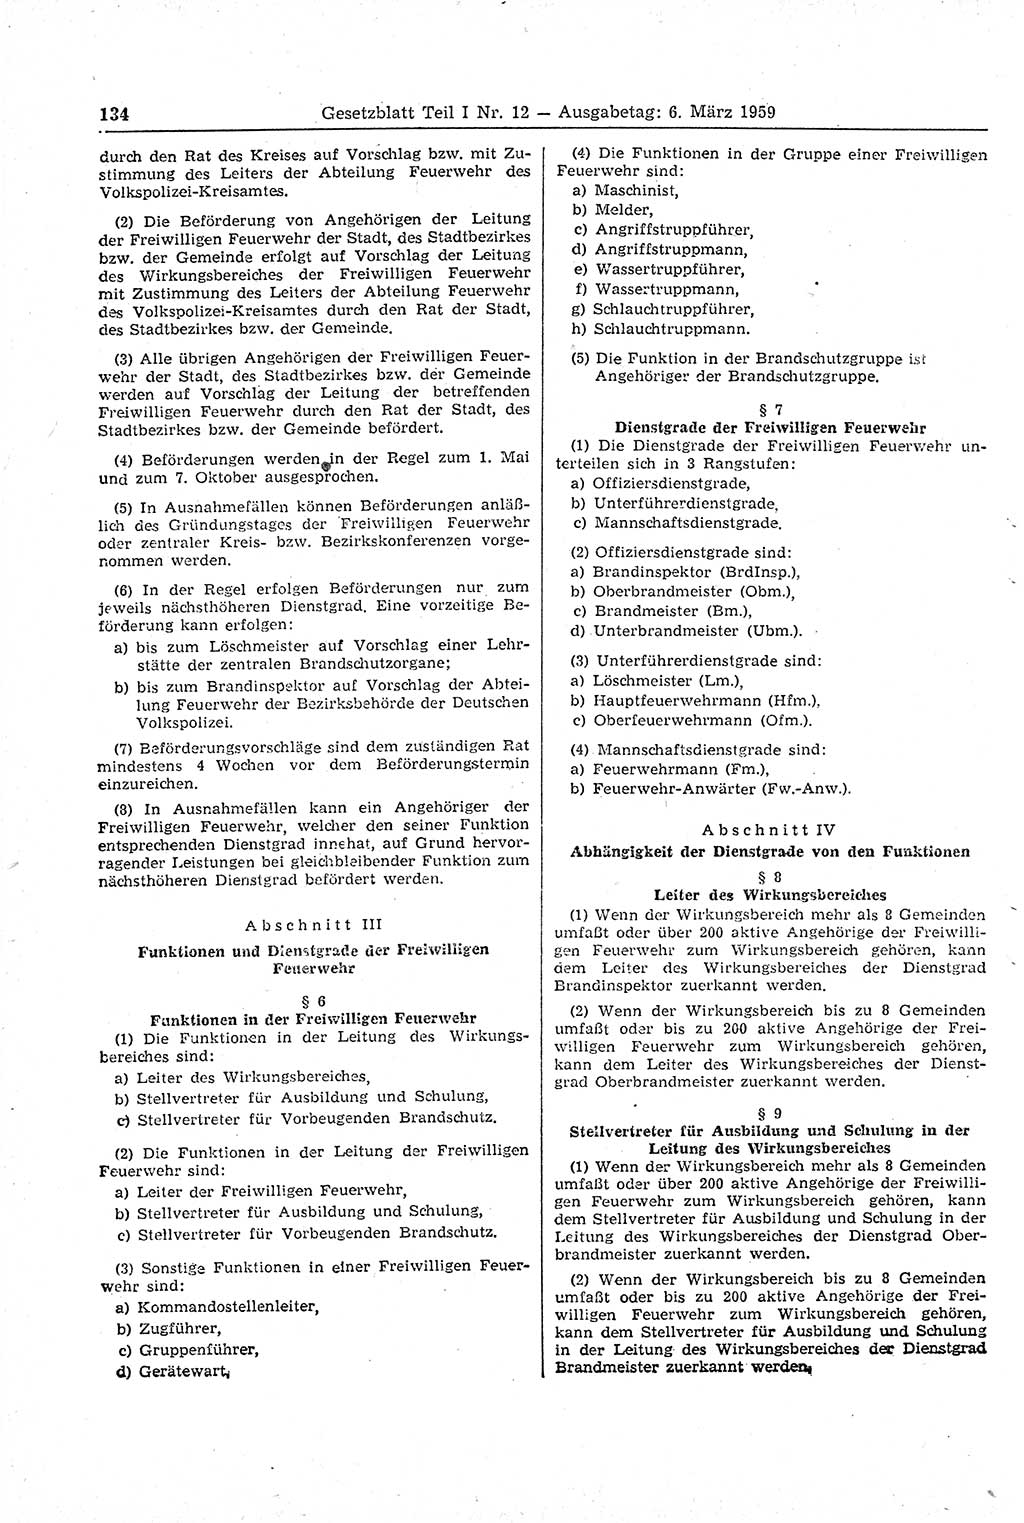 Gesetzblatt (GBl.) der Deutschen Demokratischen Republik (DDR) Teil Ⅰ 1959, Seite 134 (GBl. DDR Ⅰ 1959, S. 134)